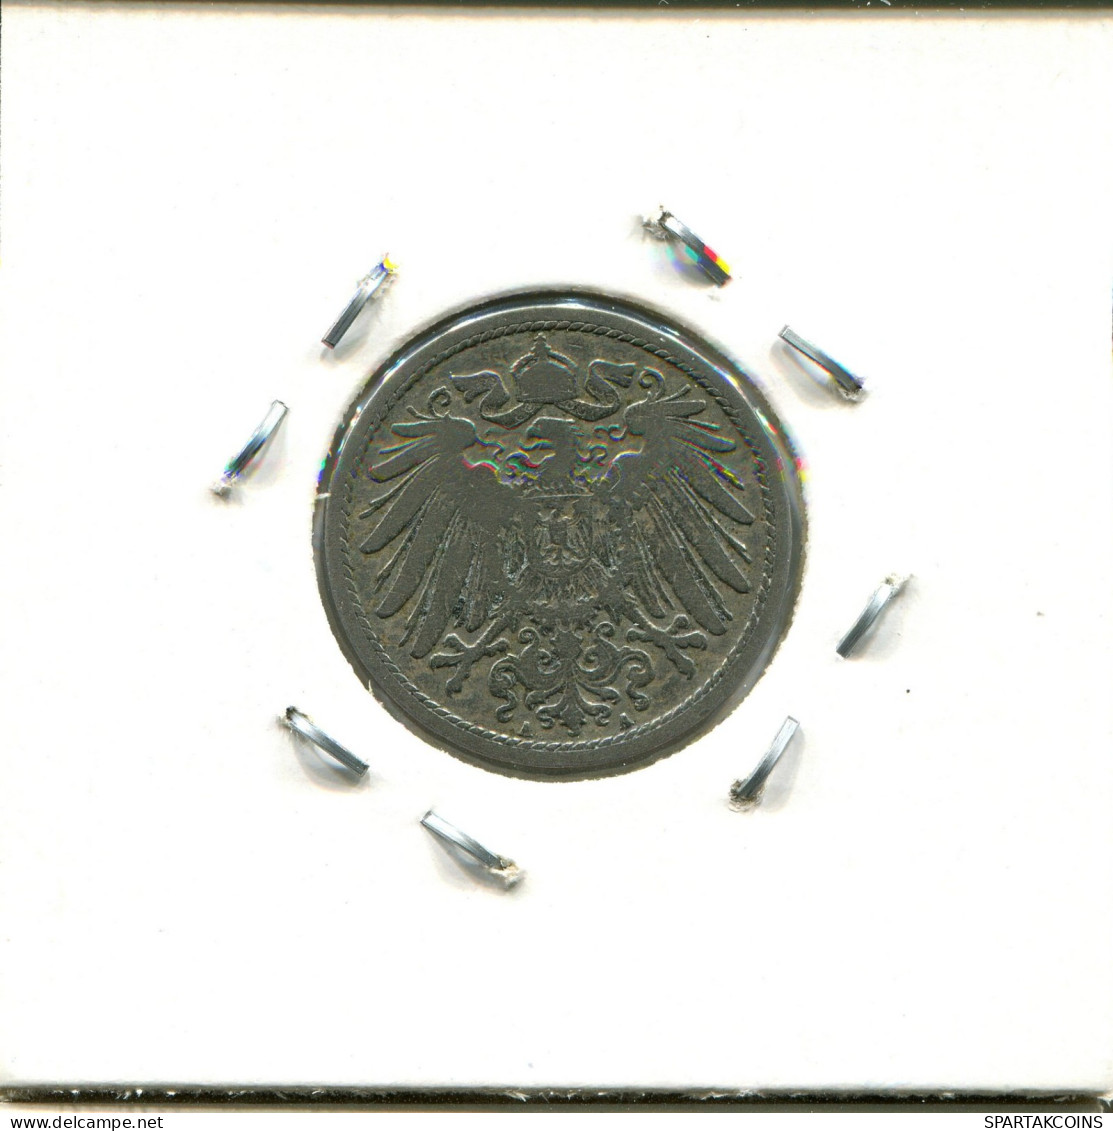 10 PFENNIG 1892 A DEUTSCHLAND Münze GERMANY #DA632.2.D.A - 10 Pfennig